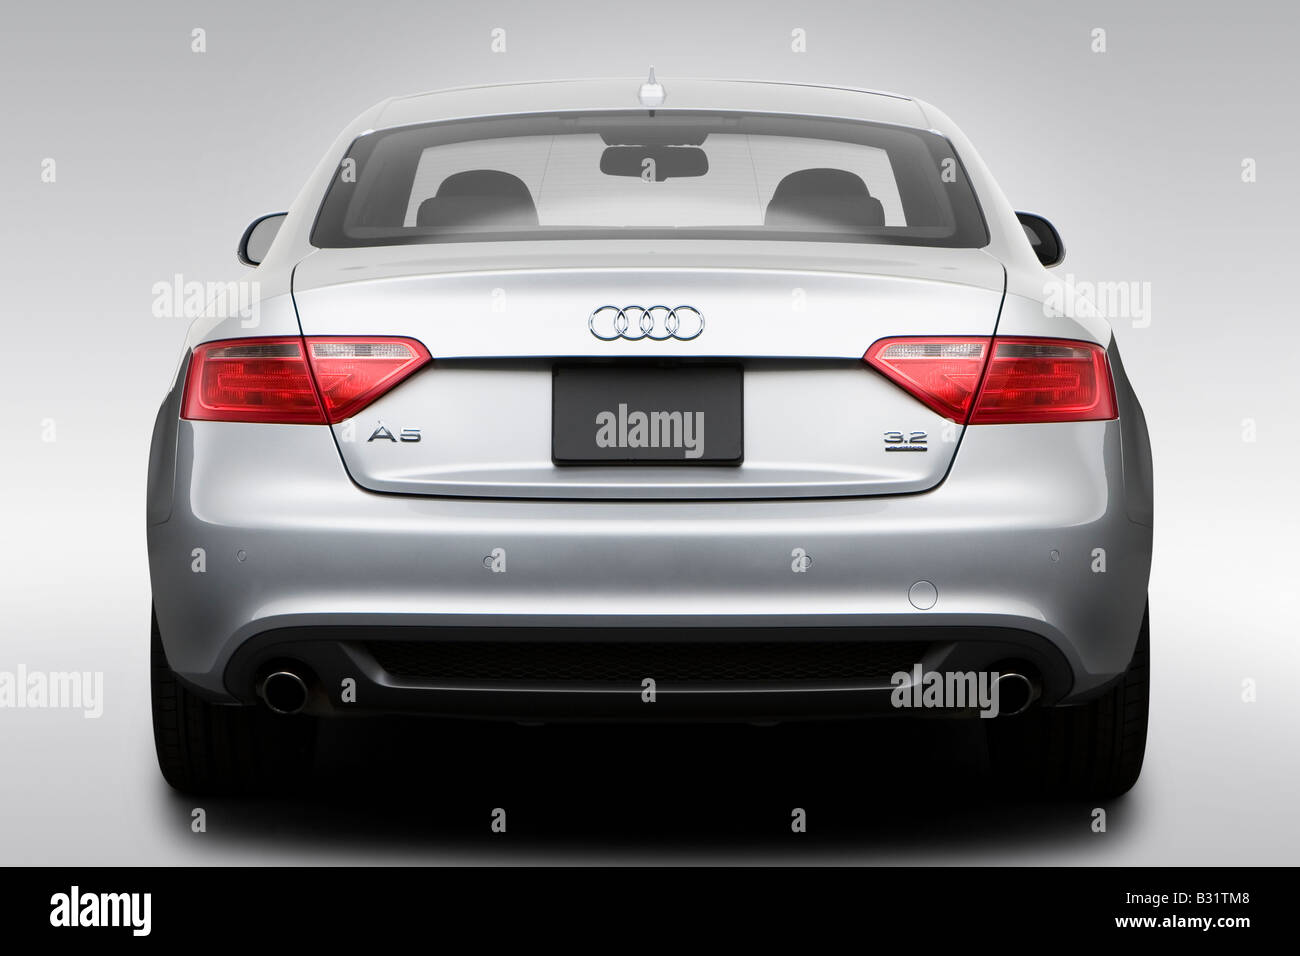 2008 Audi A5 3.2 Quattro en argent - Bas/arrière large Banque D'Images